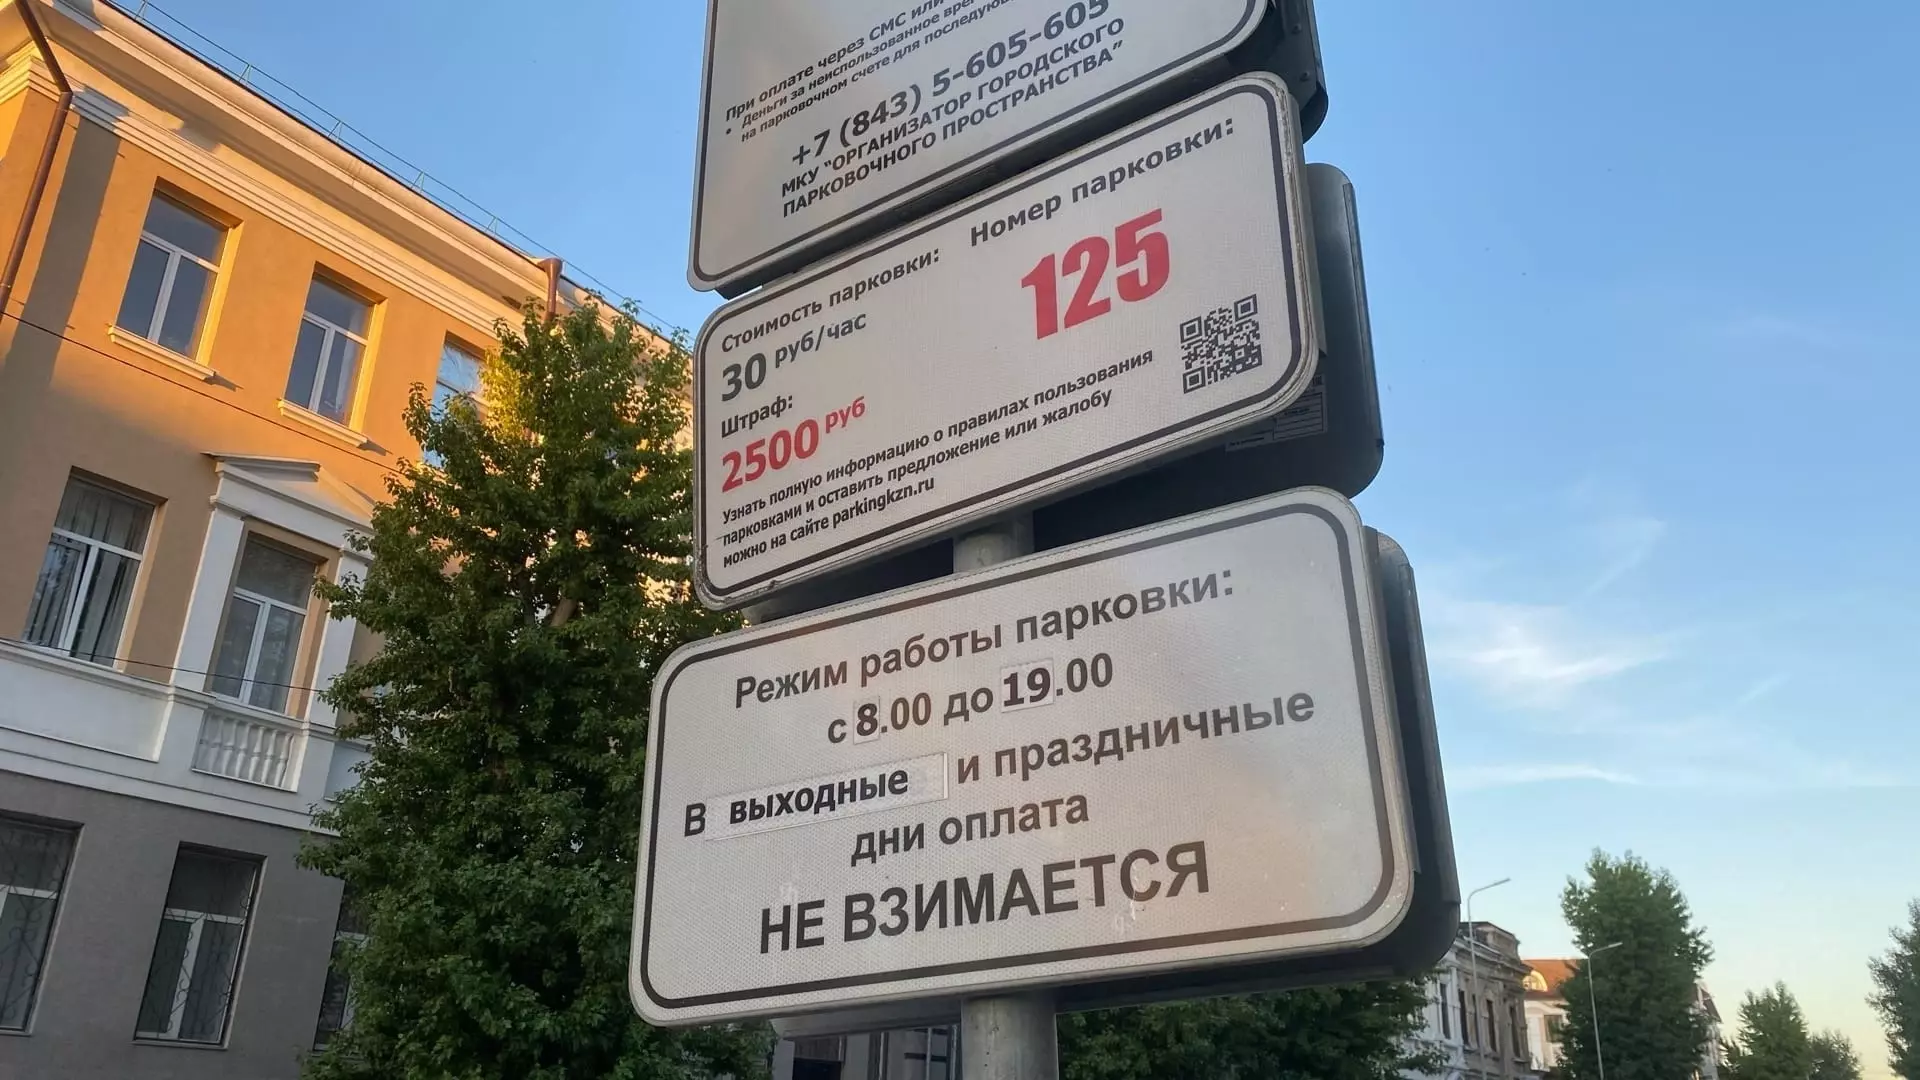 Власти определили даты, когда парковки в Казани будут бесплатными